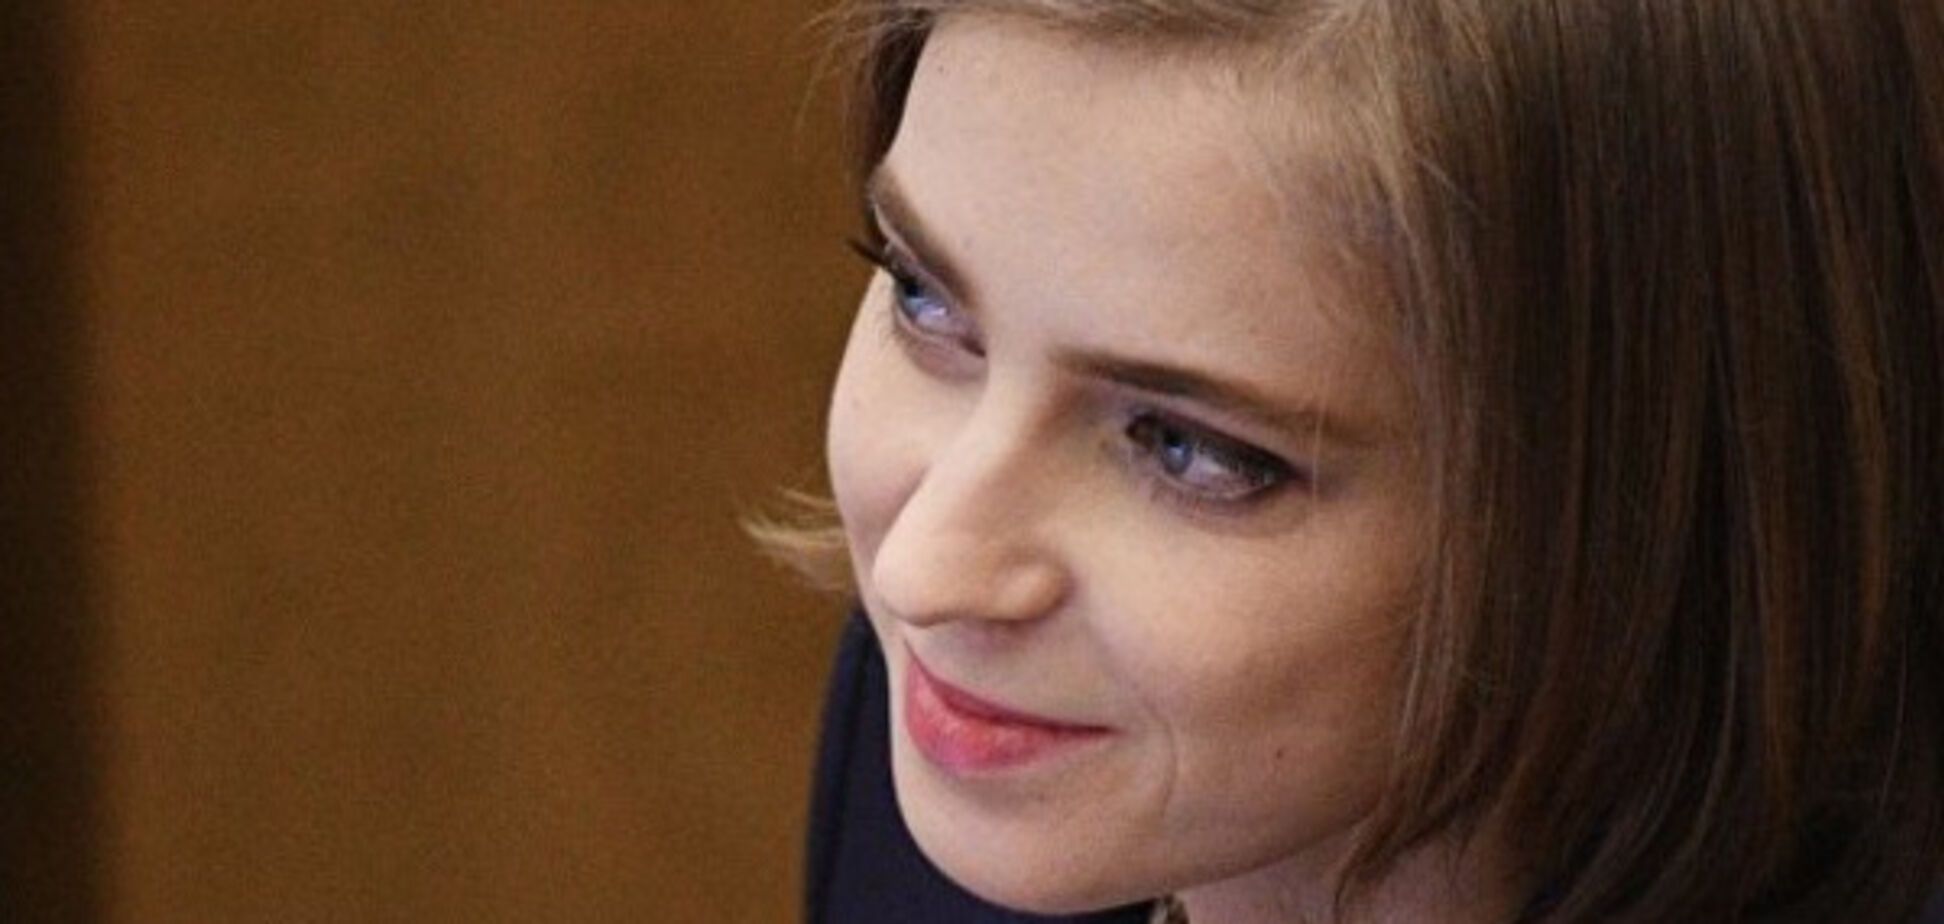 В России возник новый скандал вокруг предавшего Украину прокурора